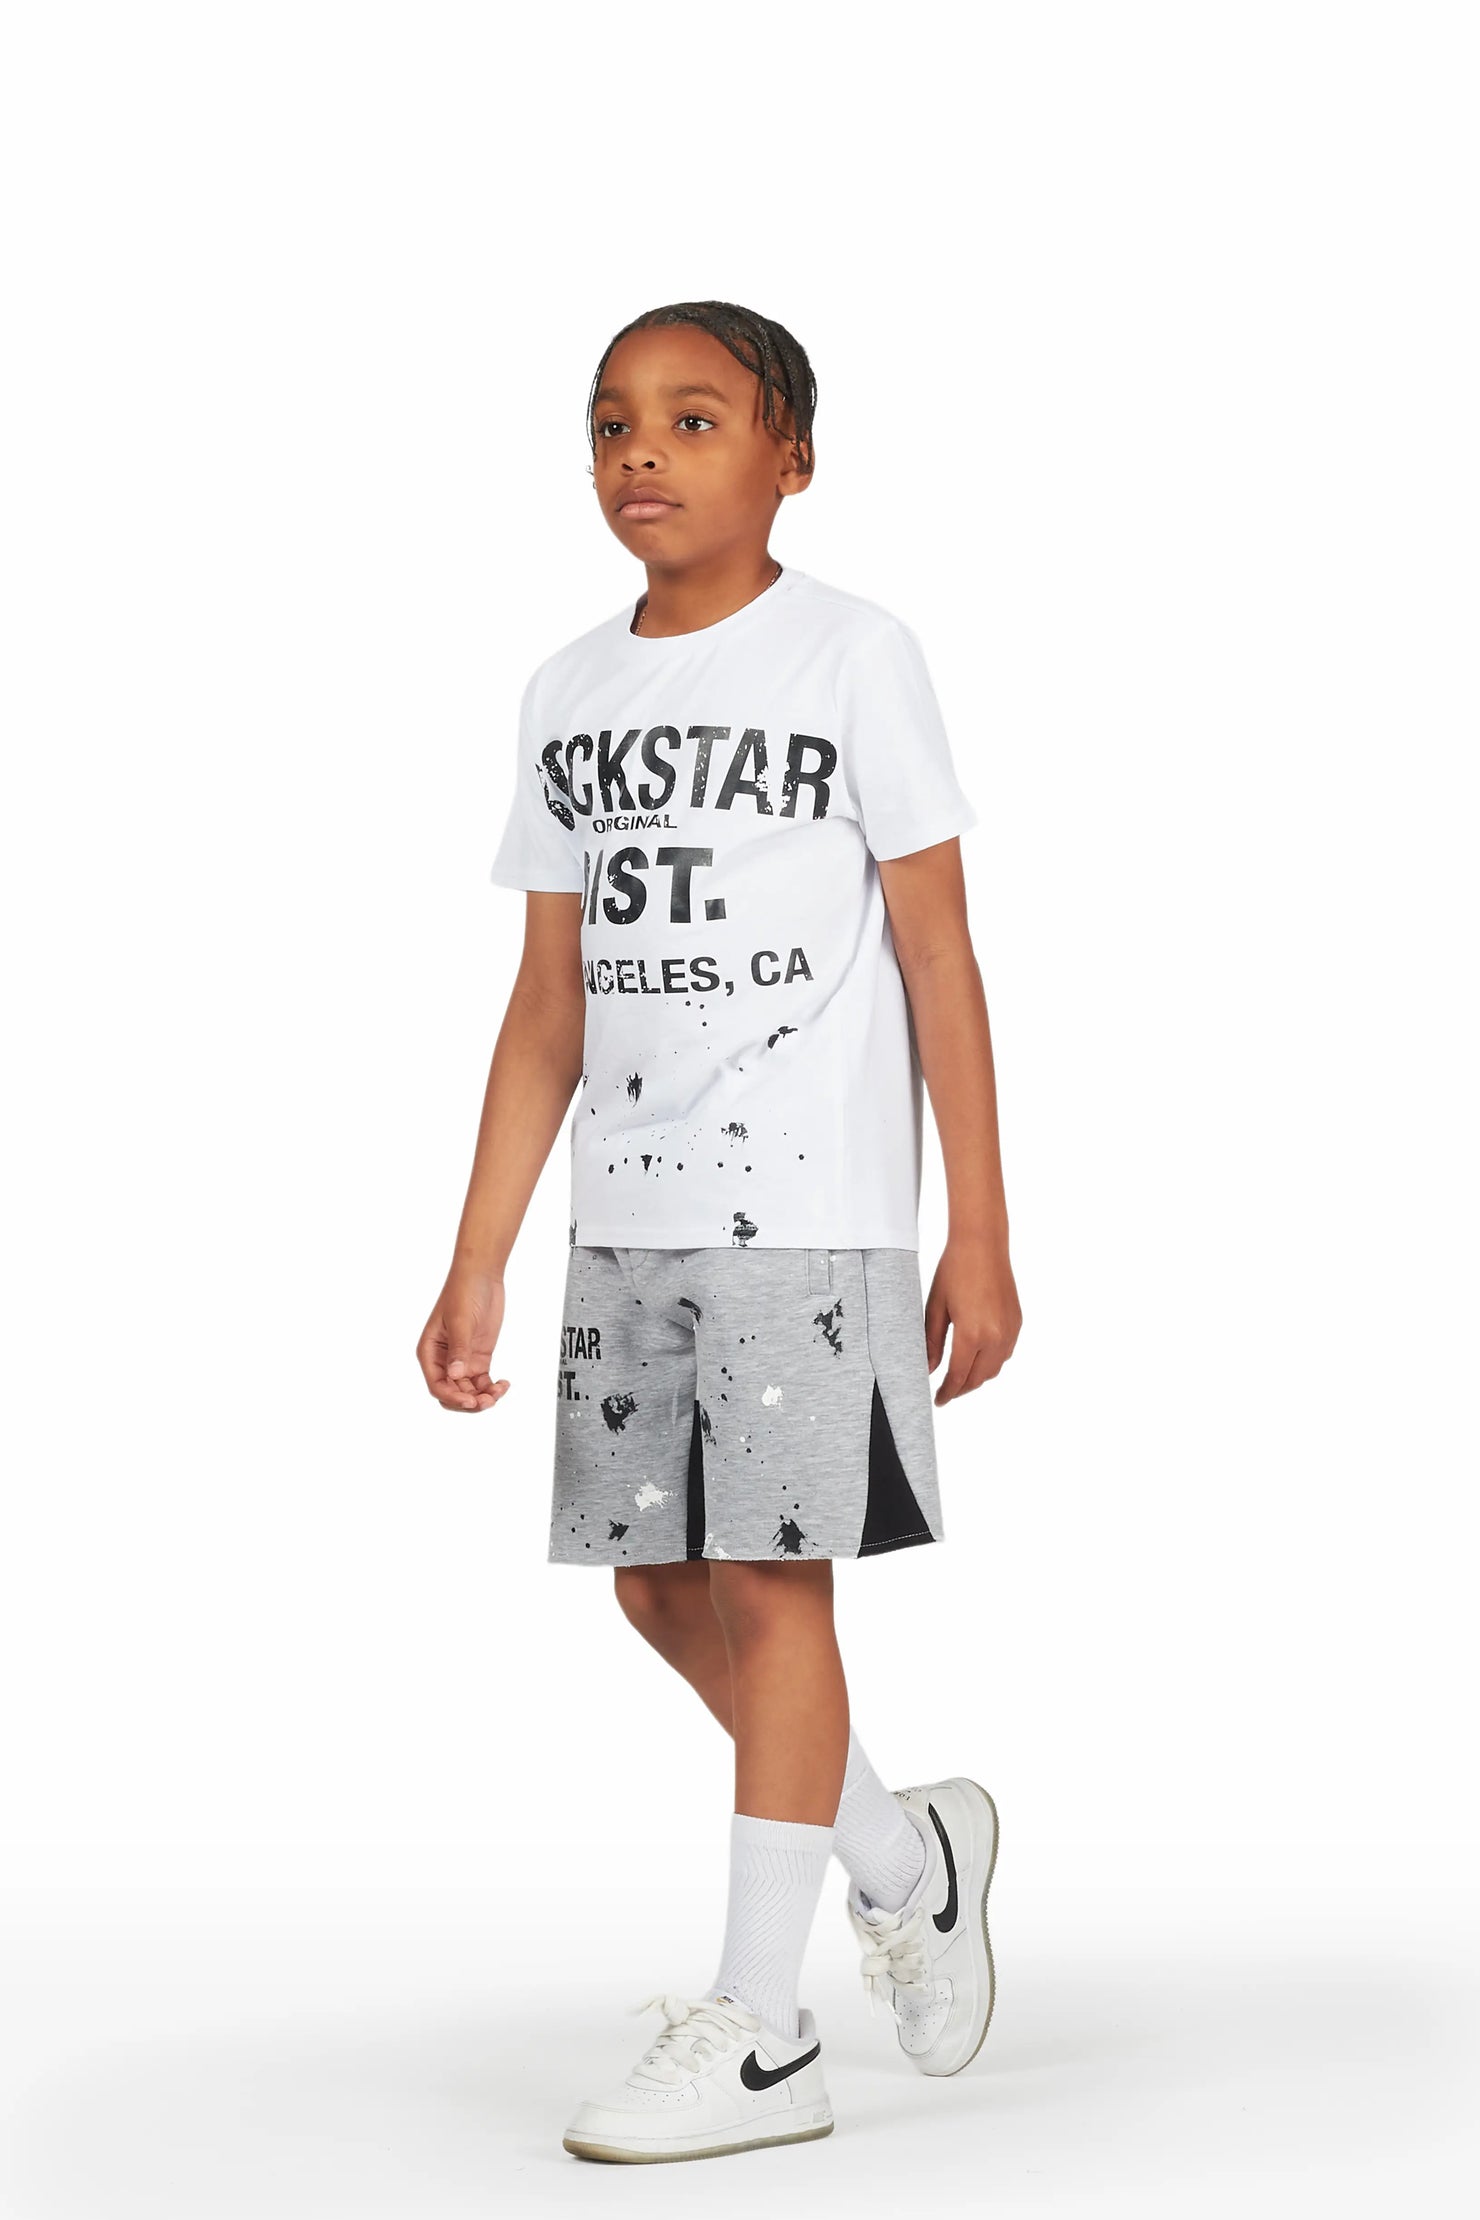 Boys Scottie White/Grey T-Shirt Short Set